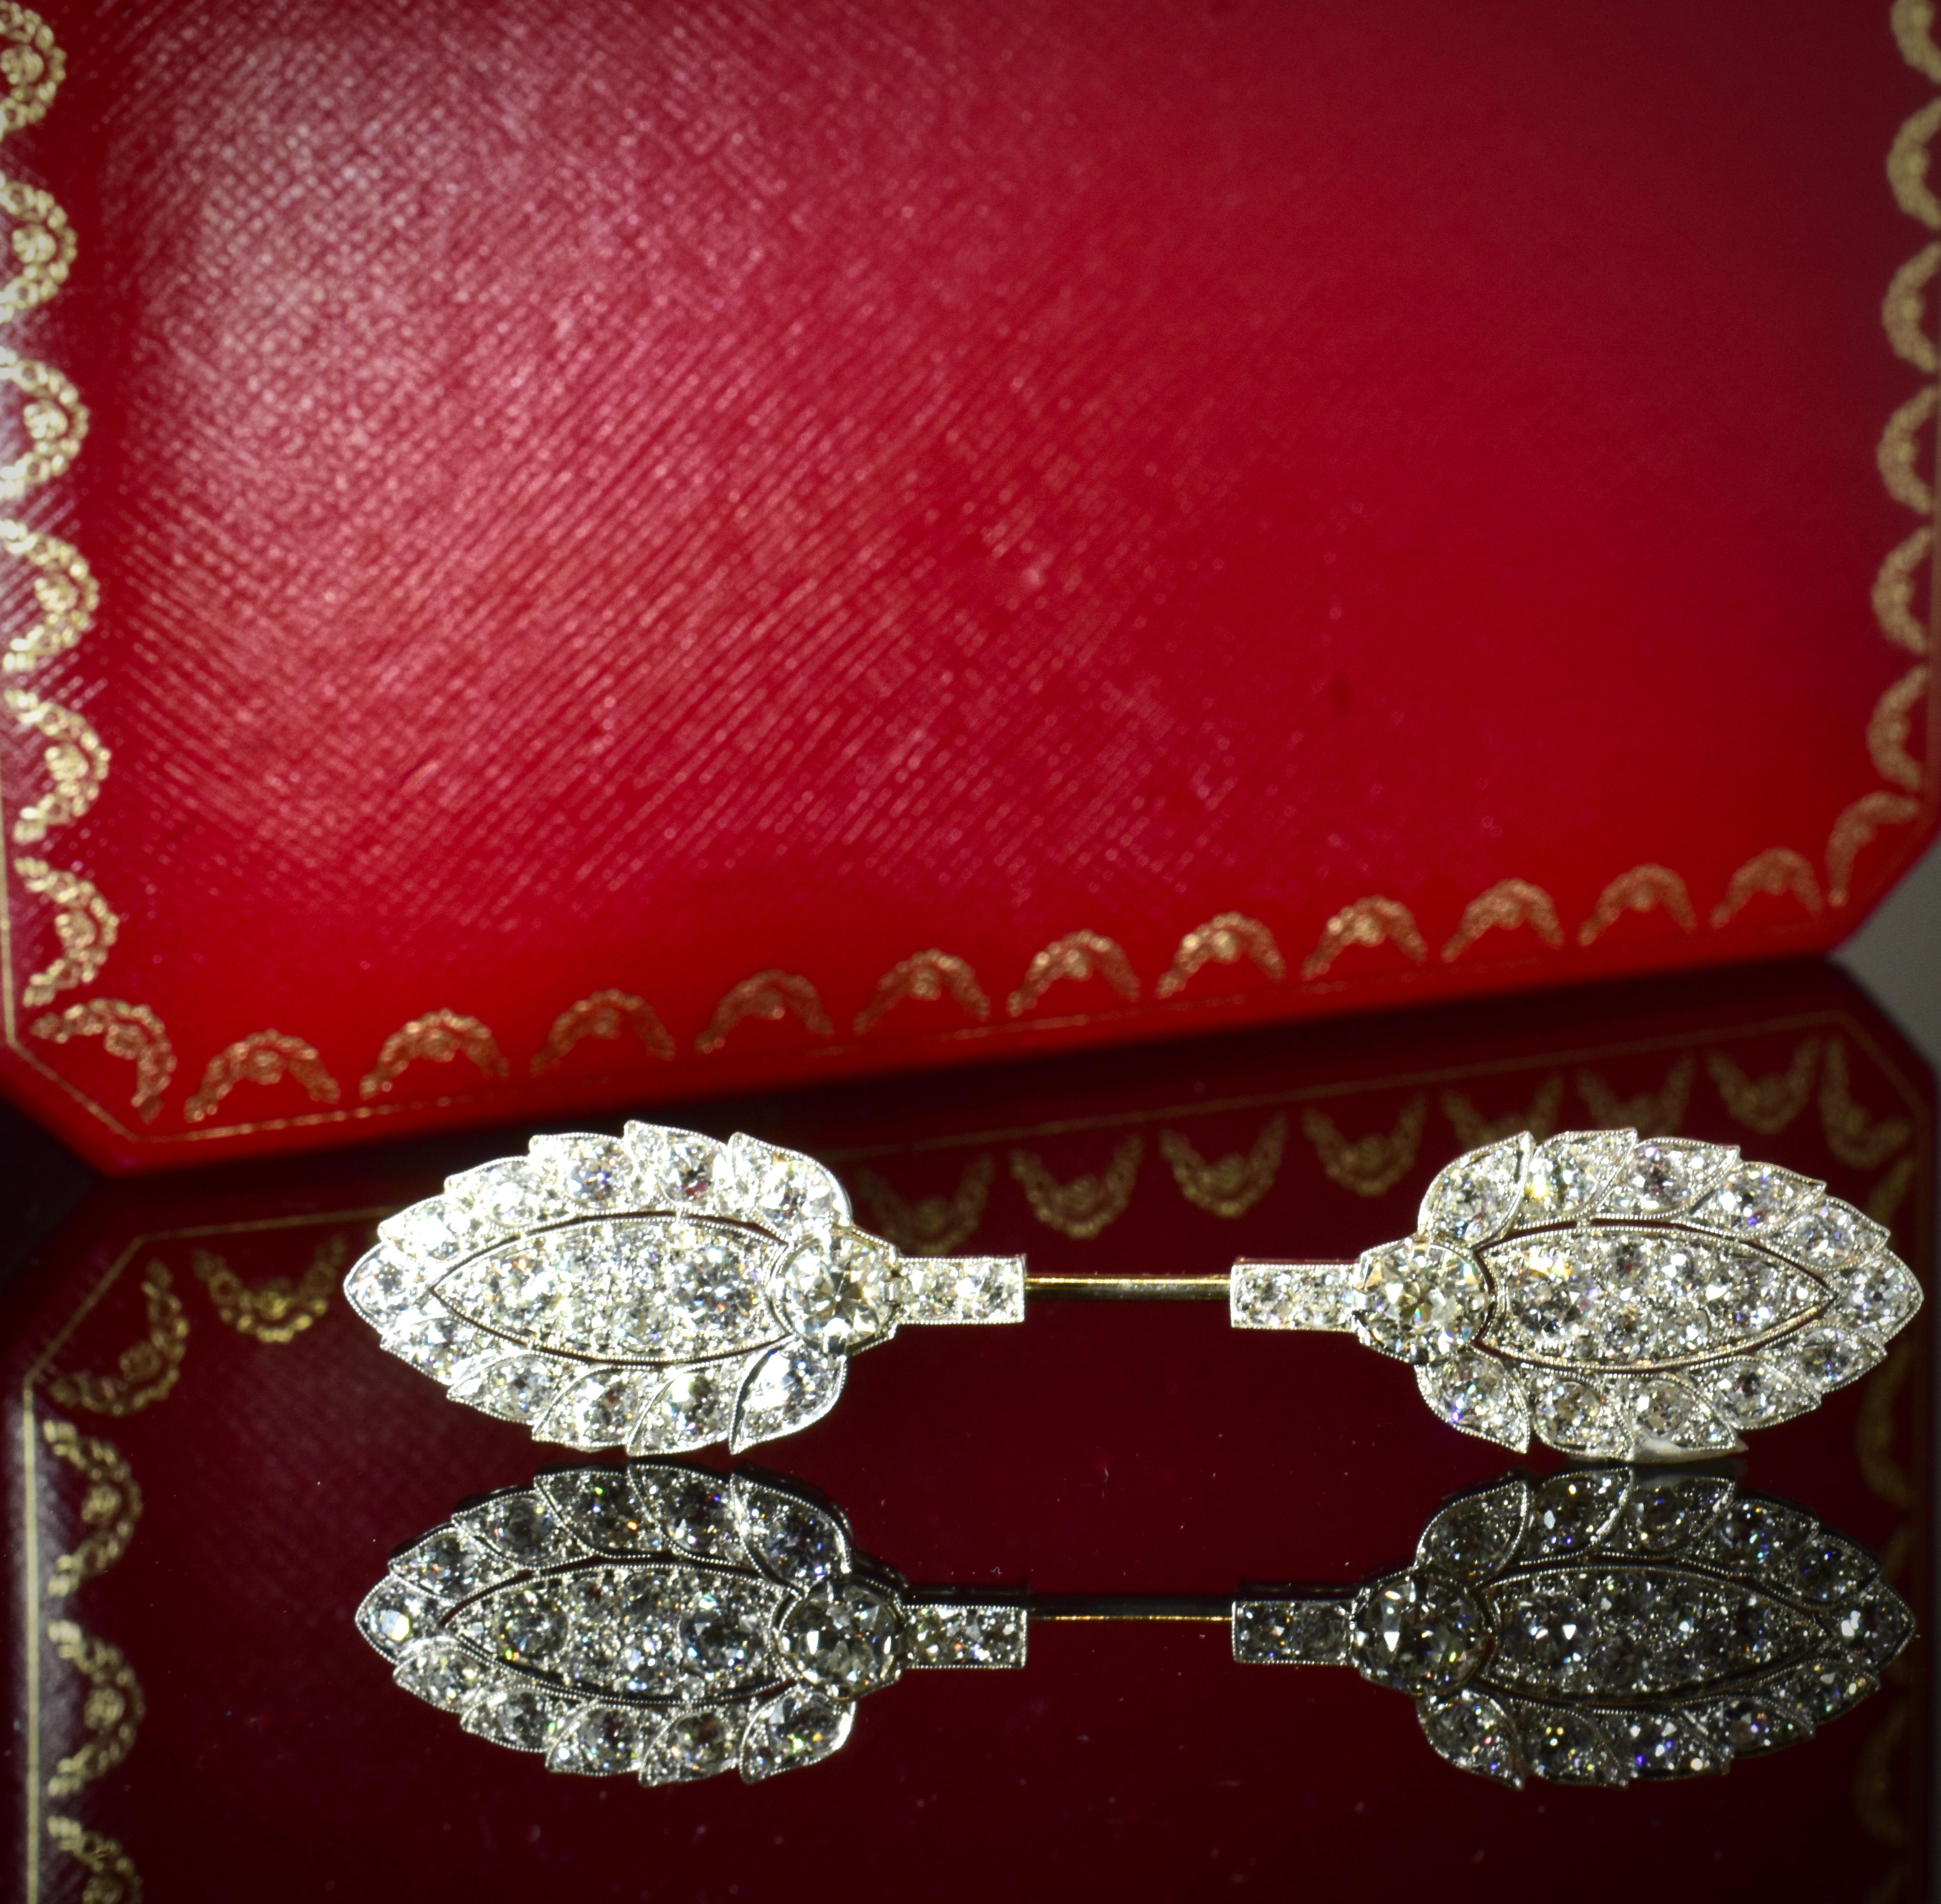 Women's or Men's Cartier Edwardian Diamond and Platinum Antique Jabot or Cliquet Pin, c. 1914